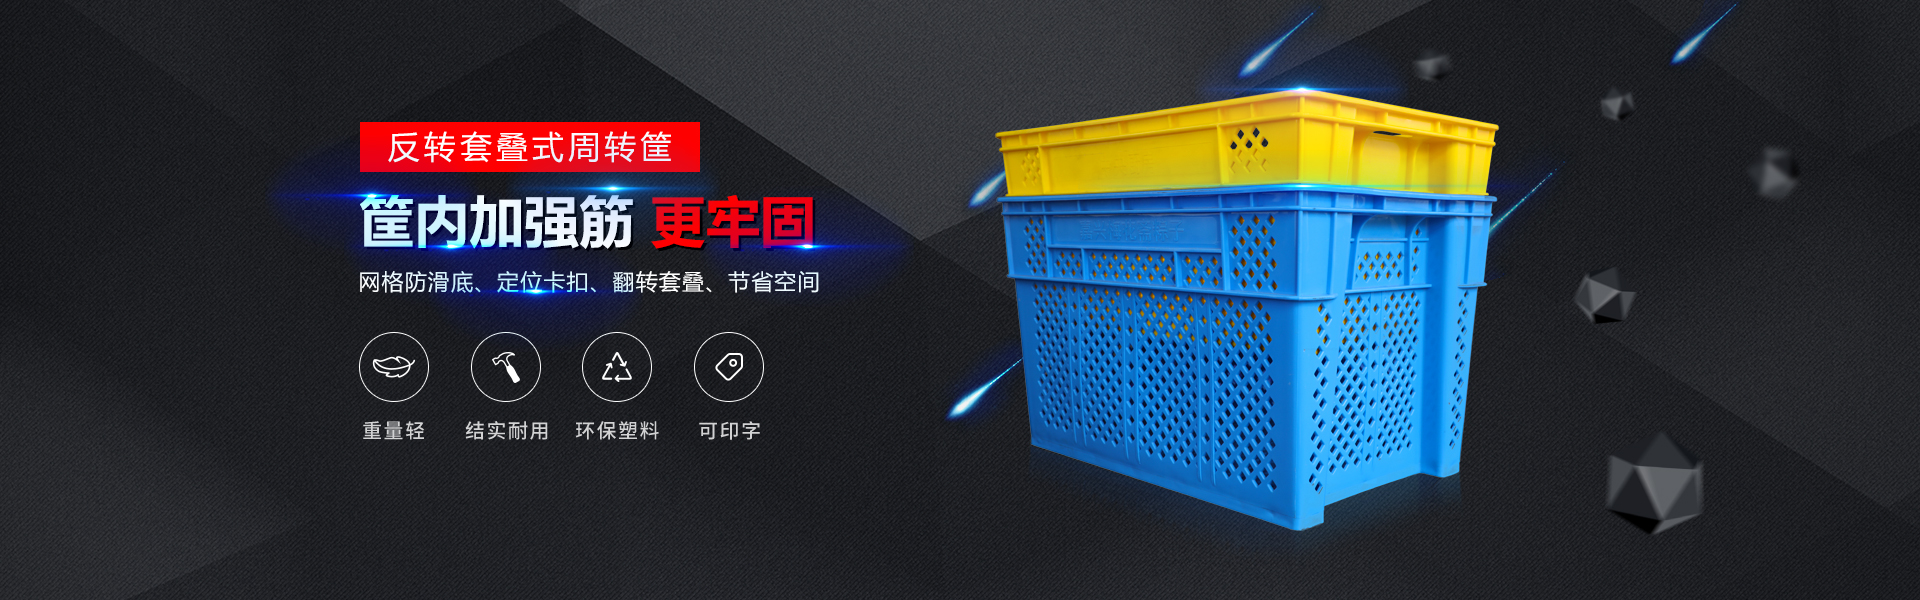 青岛ag九游会官方登录网址自动化主营零件盒,塑料零件盒,塑料托盘等产品!